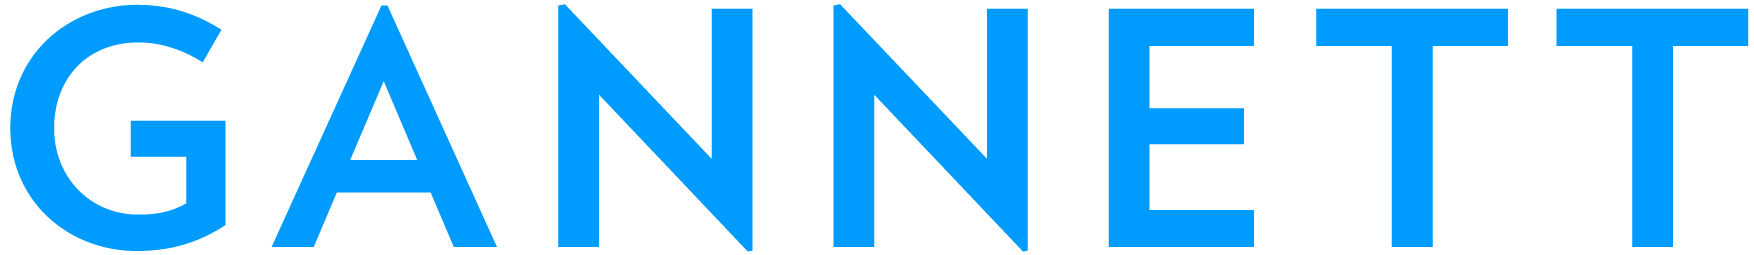 Gannett Logo (no padding).png